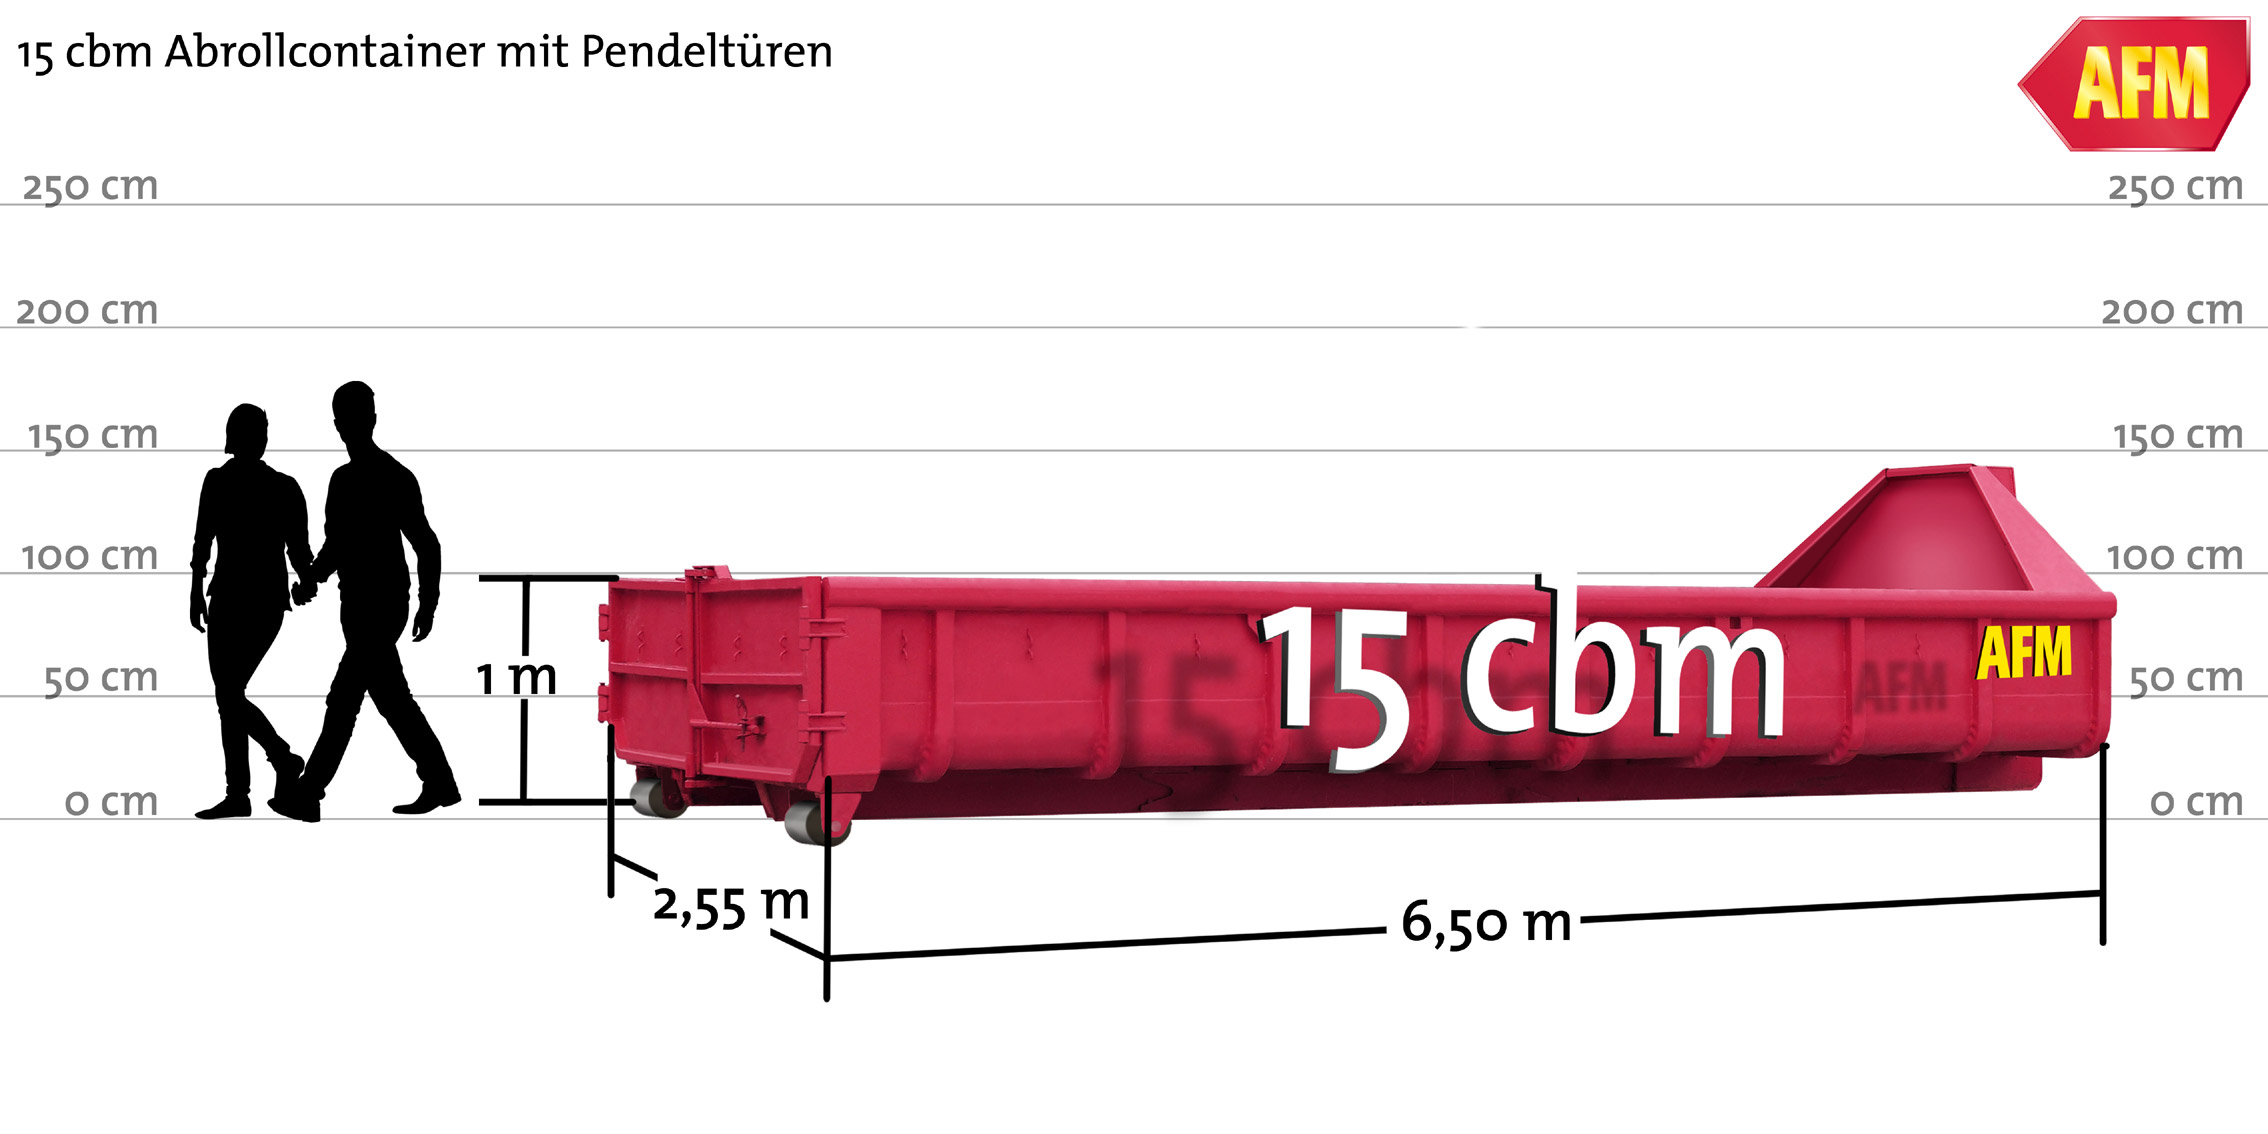 Abroll-Container mit PendeltÃ¼ren 15cbm